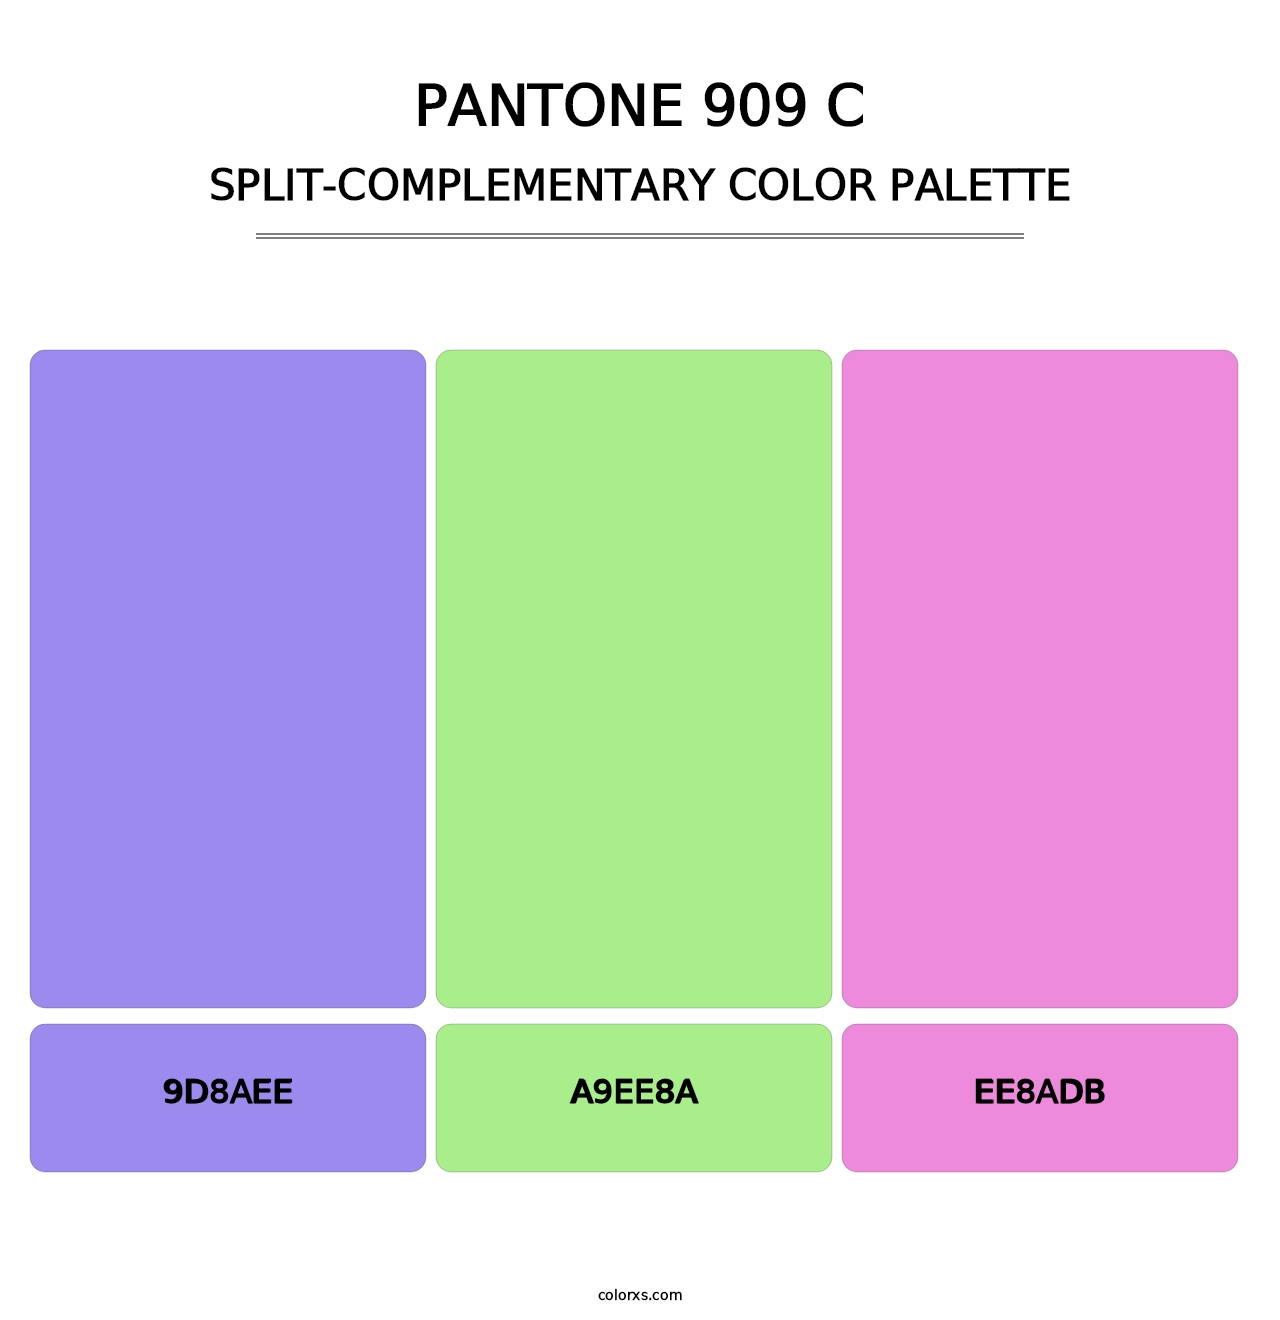 PANTONE 909 C - Split-Complementary Color Palette